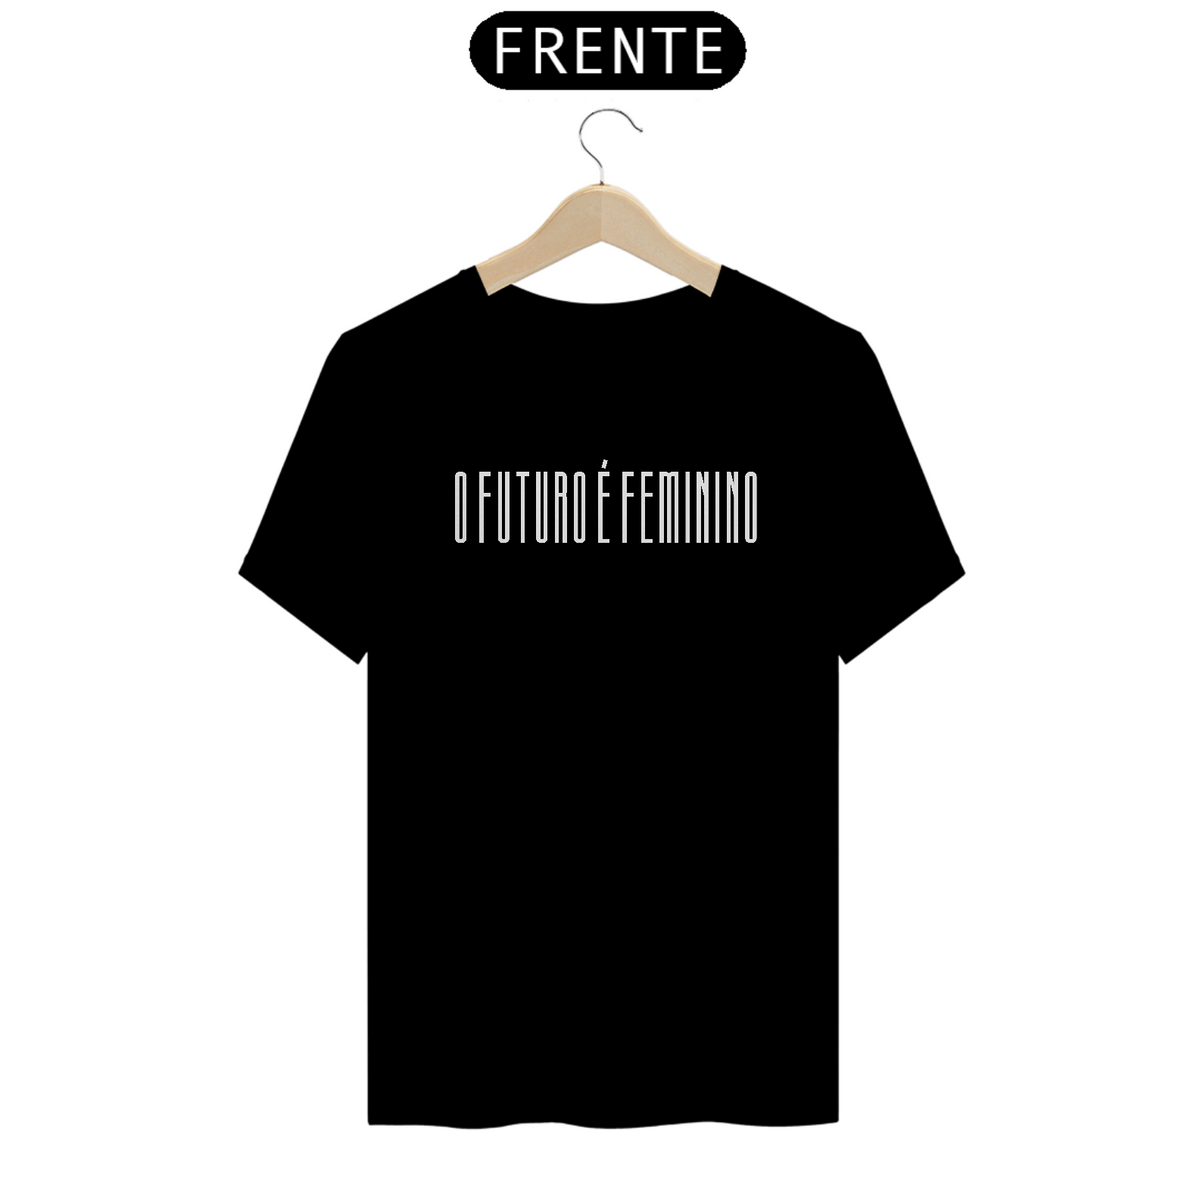 Nome do produto: Camiseta O futuro é feminino - preta